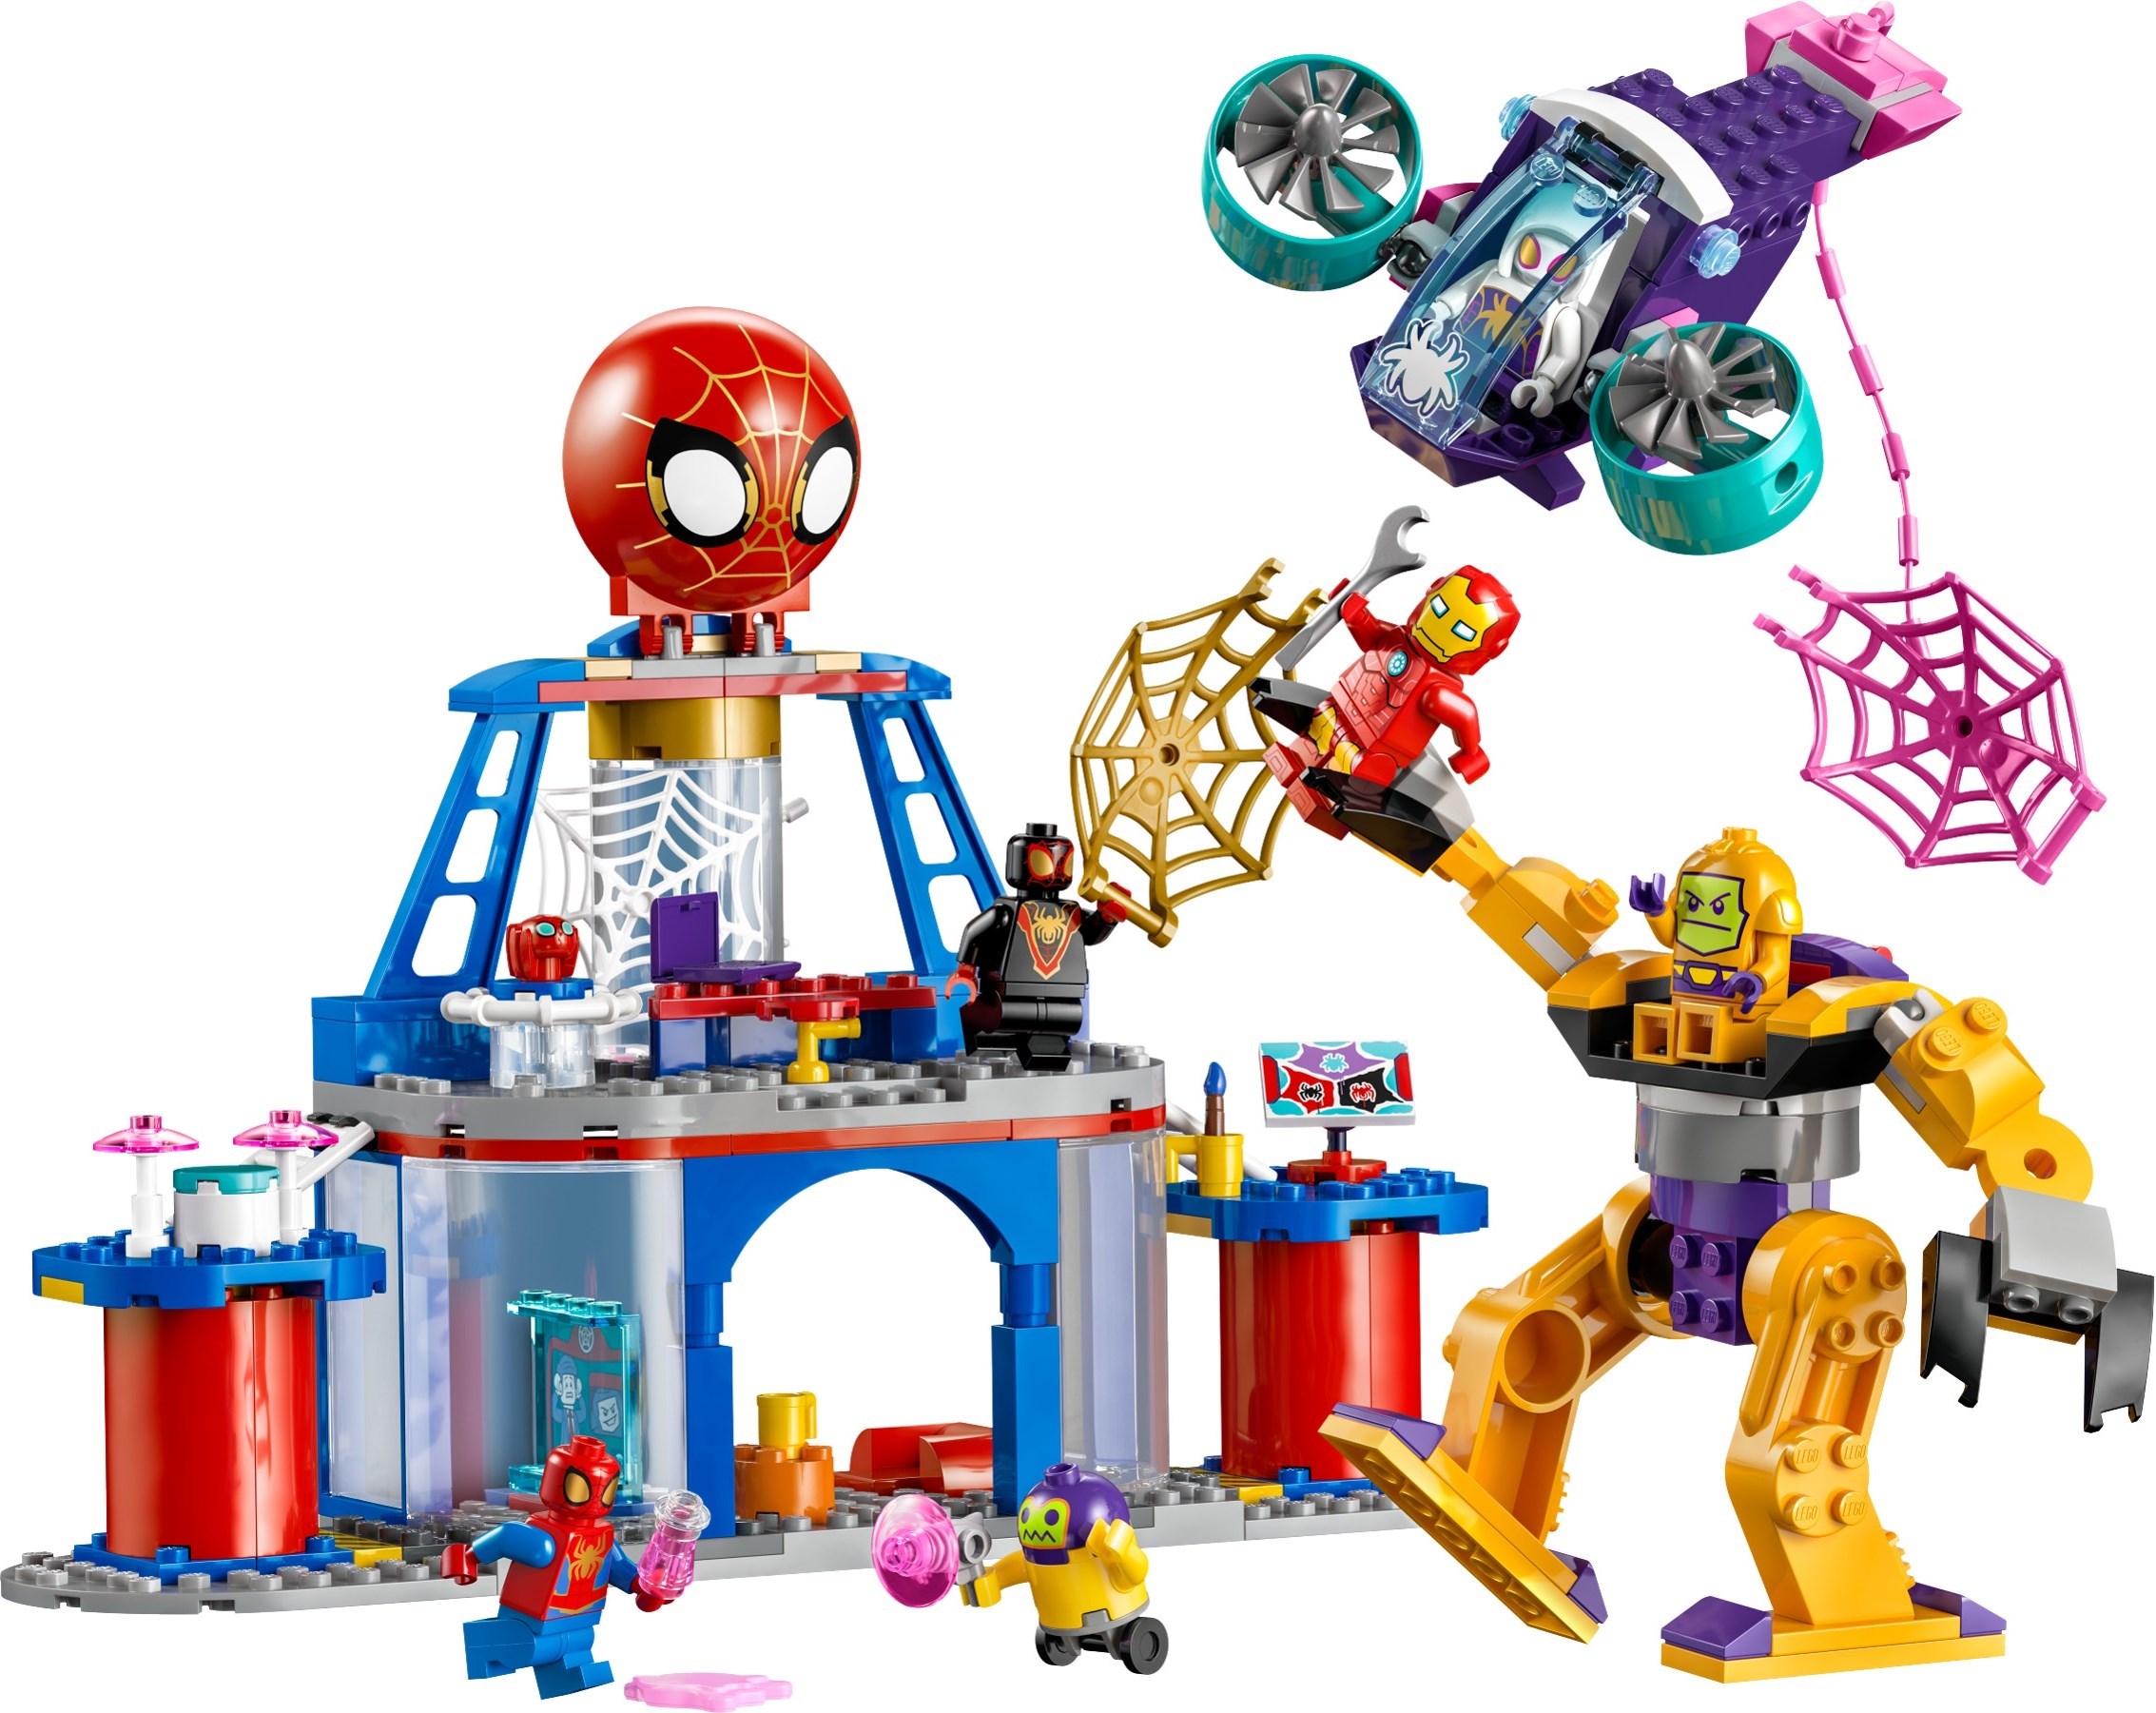 LEGO Marvel 2024 sets revealed: X-Men, Spider-Man & more!